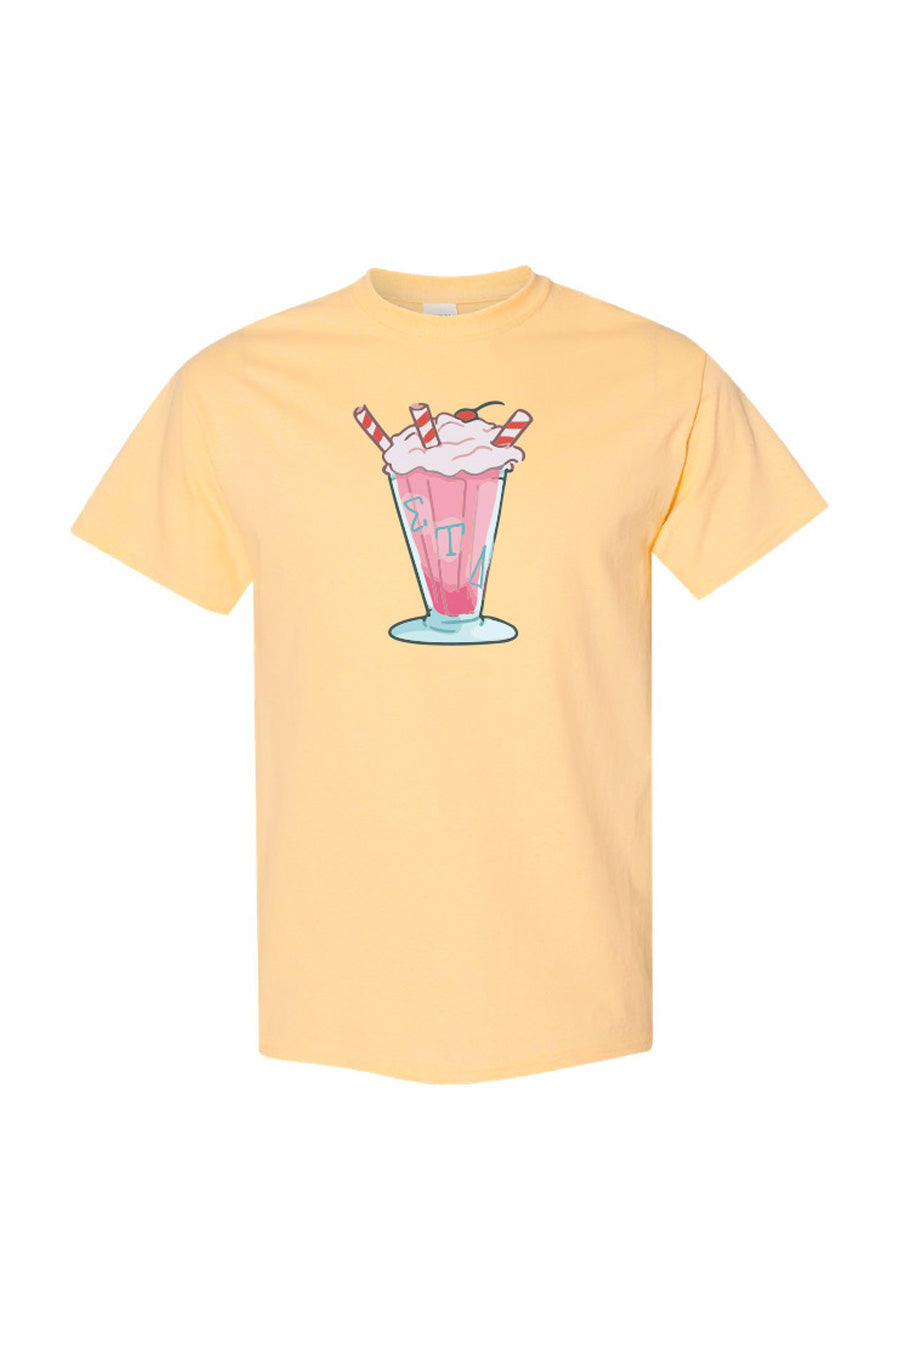 ΣΤΔ through the Decades - The 50s T-shirt (Multiple Colors Available)